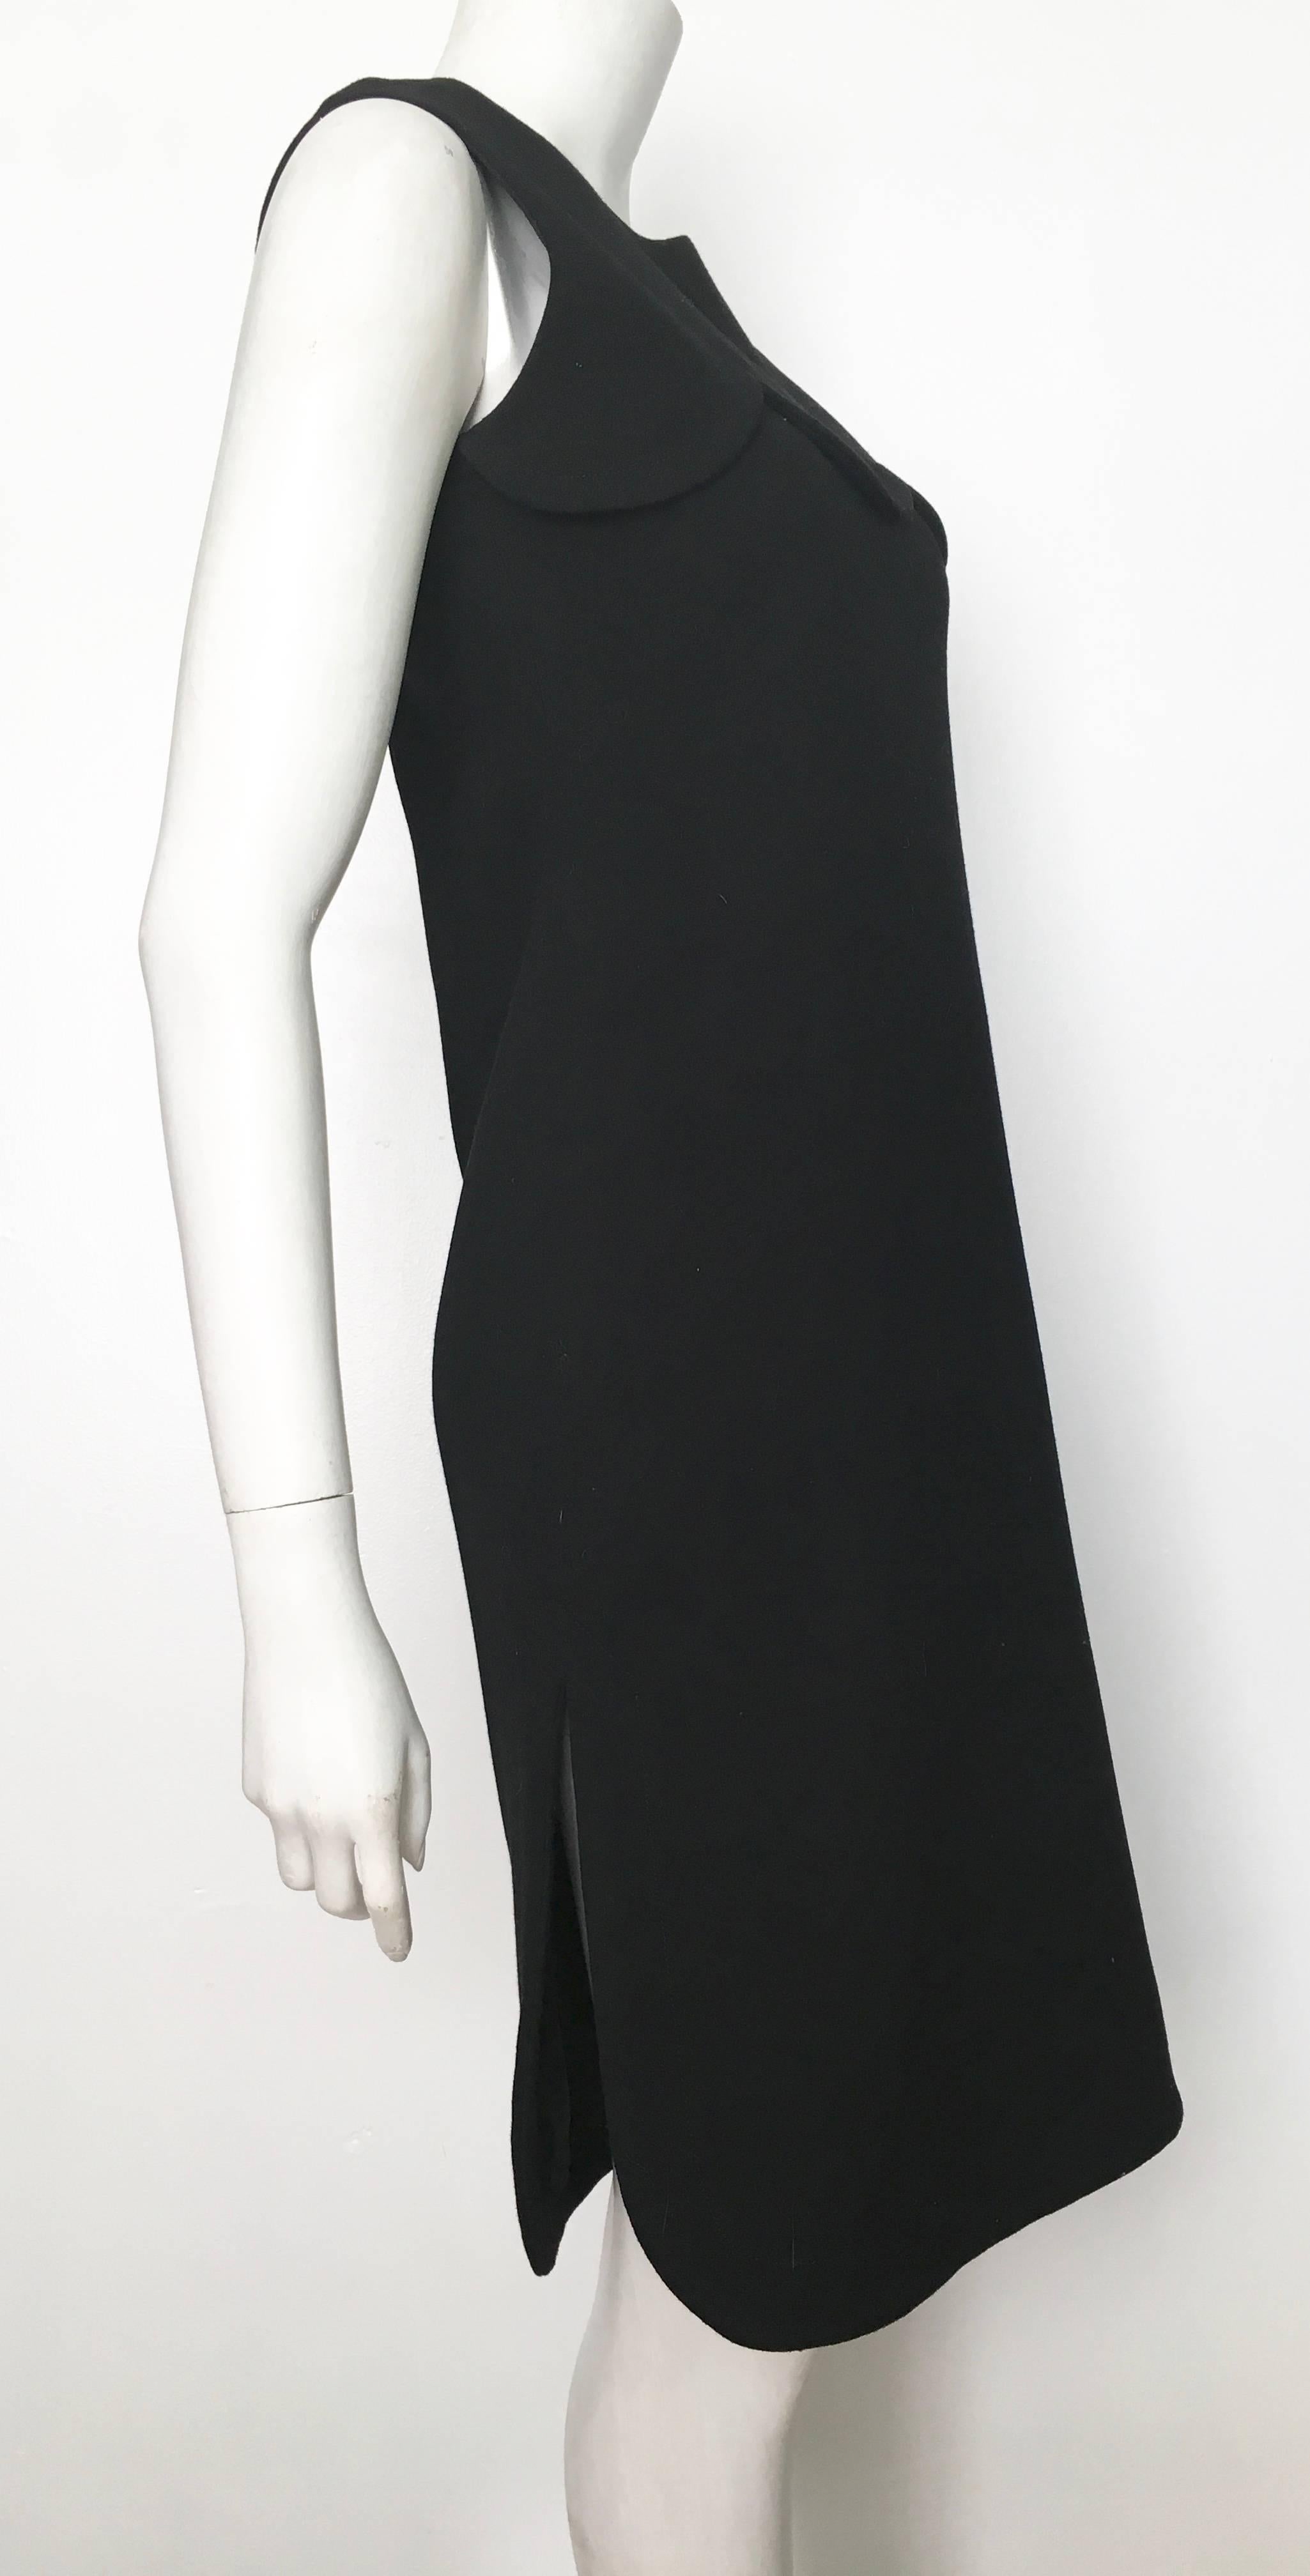 Pierre Cardin for Saks Fifth Avenue 1971 Black Wool Sleeveless Dress Size 6. 1